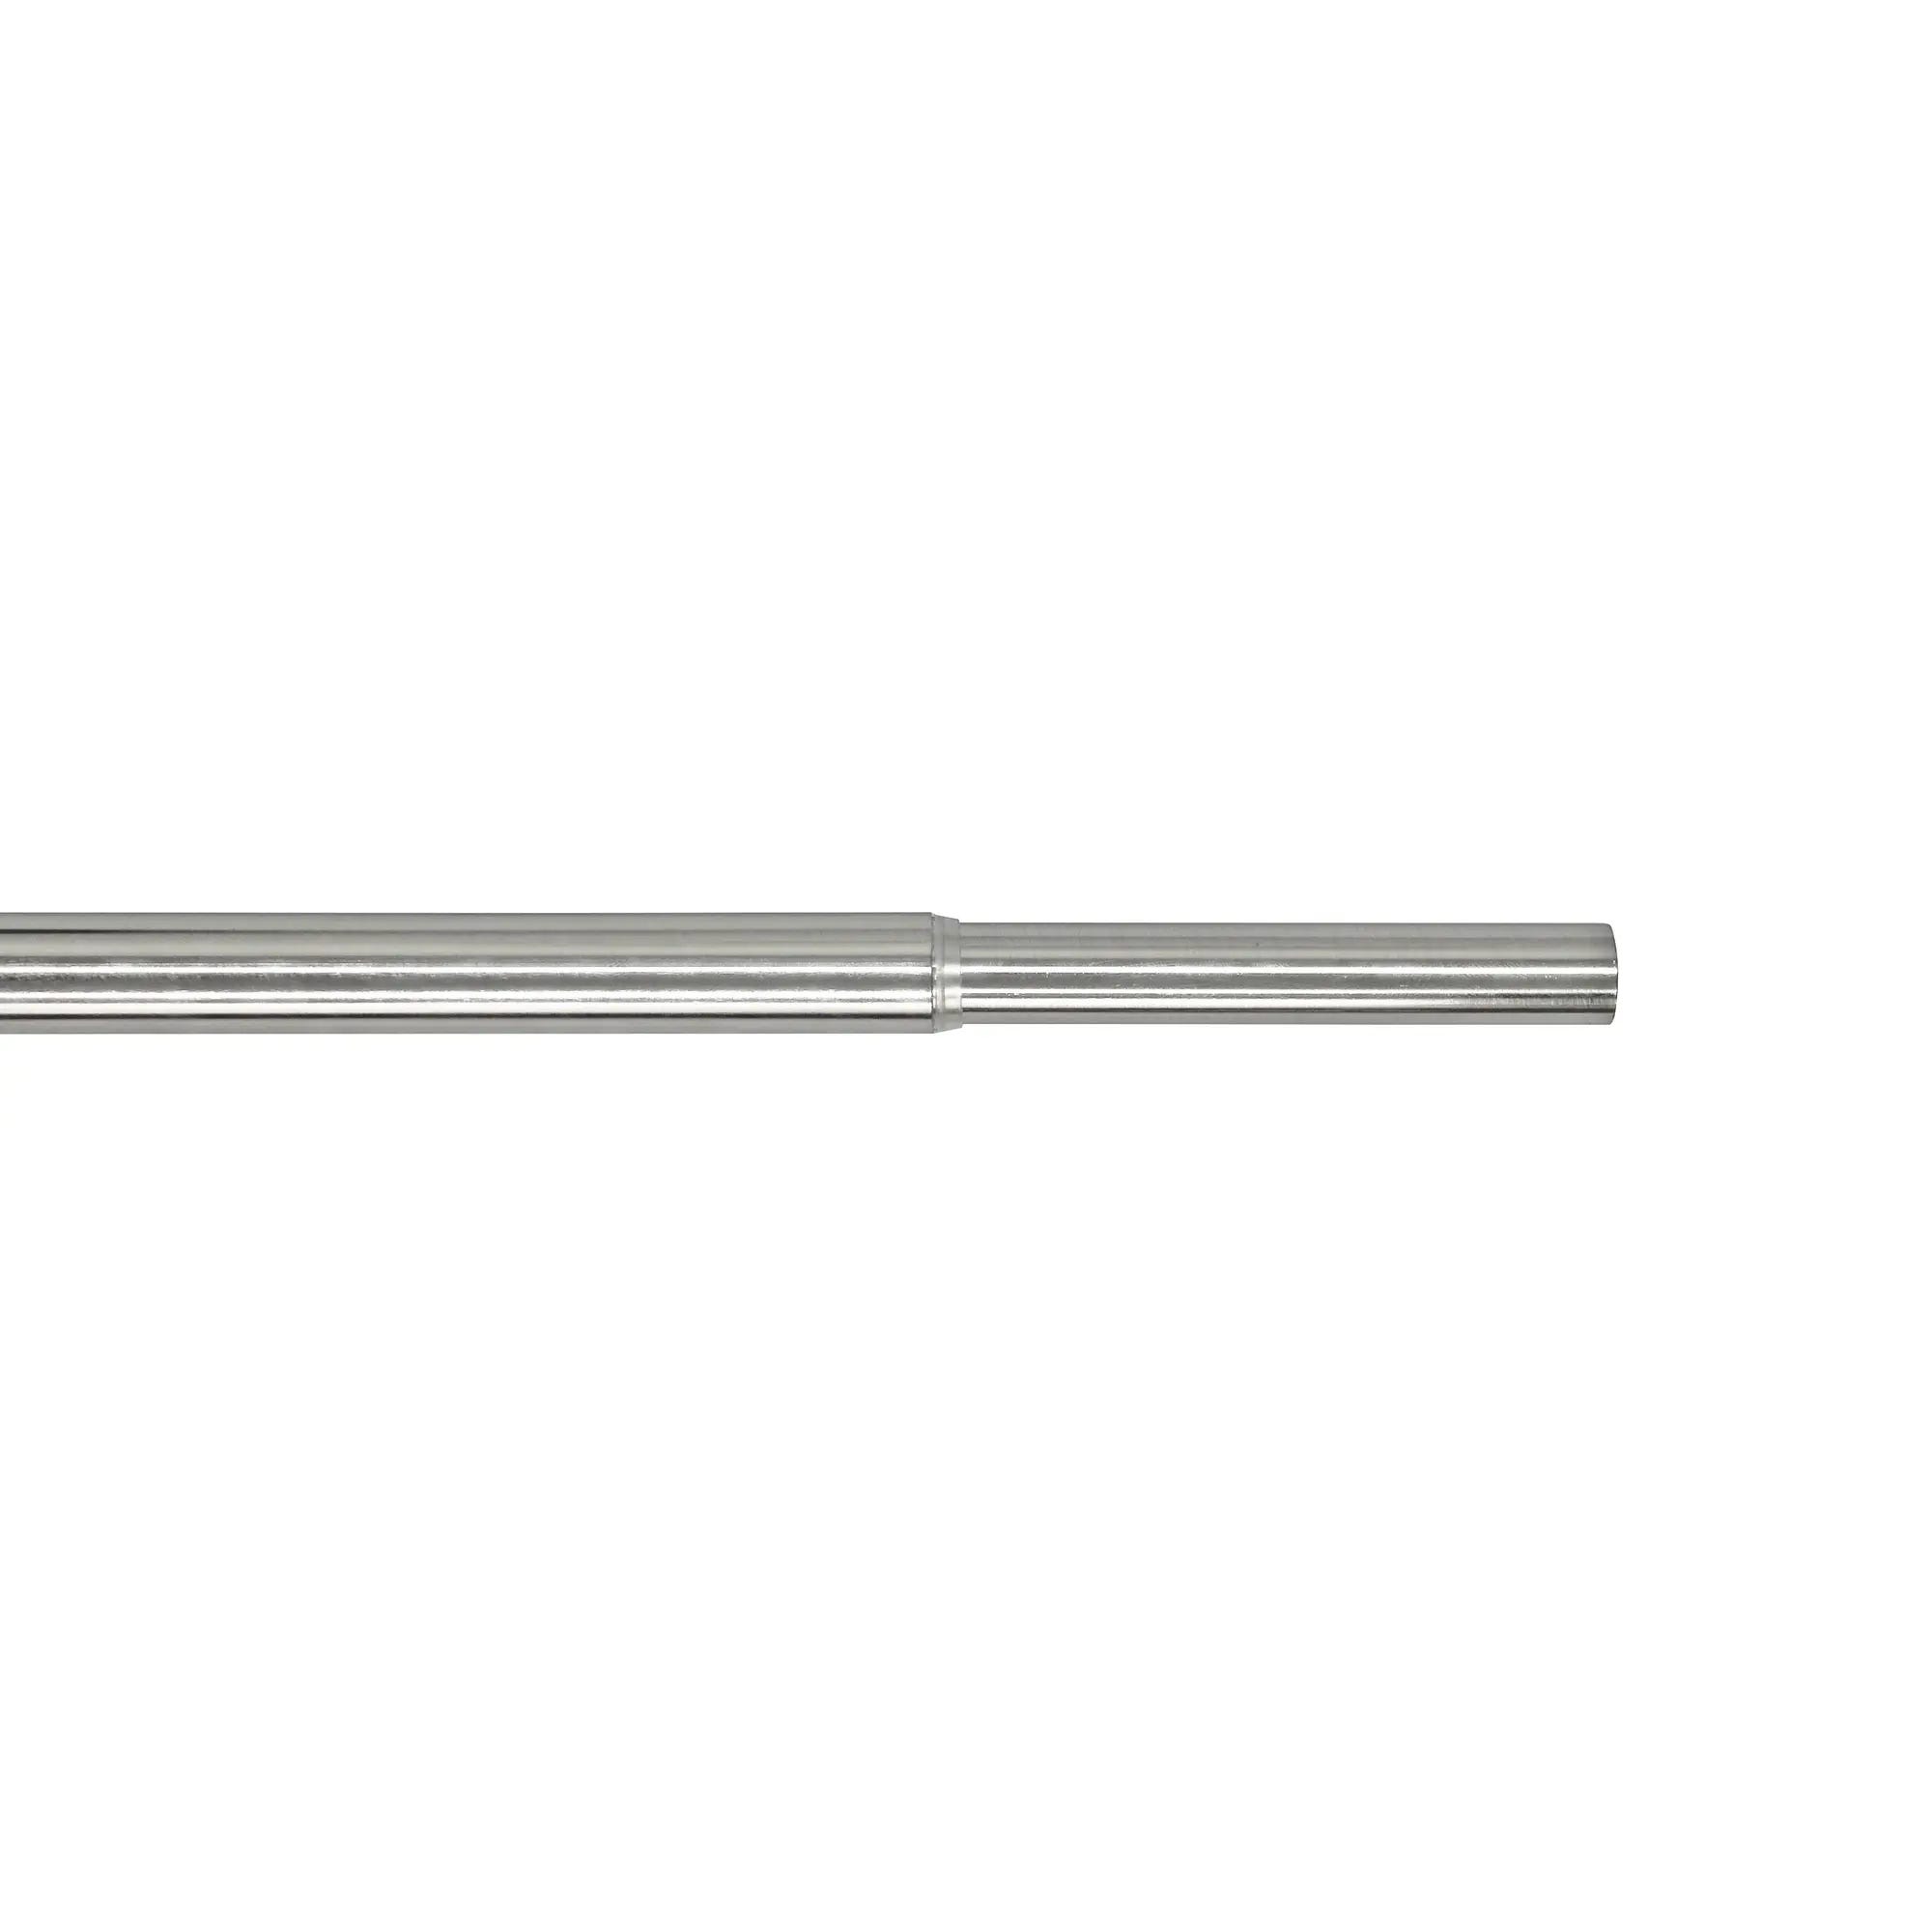 Support extensible tringle à rideau Glam, 20/28 mm chrome brossé INSPIRE